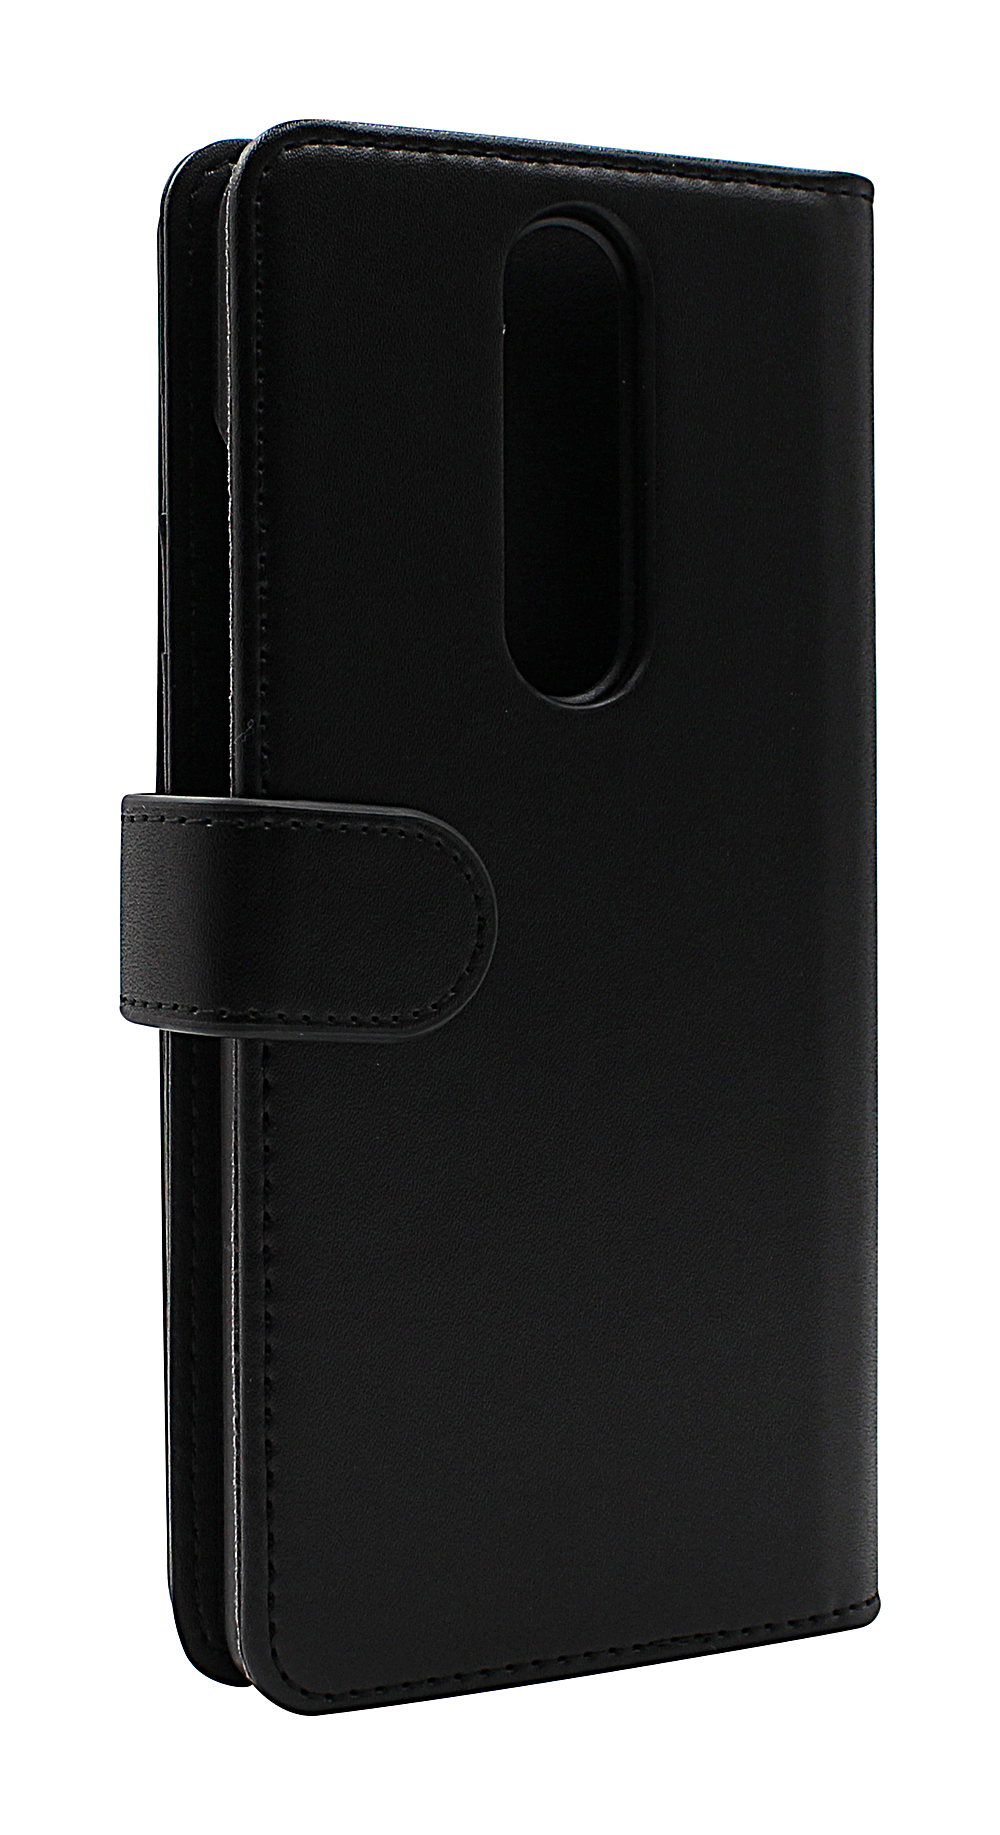 Skimblocker XL Wallet Nokia 2.4